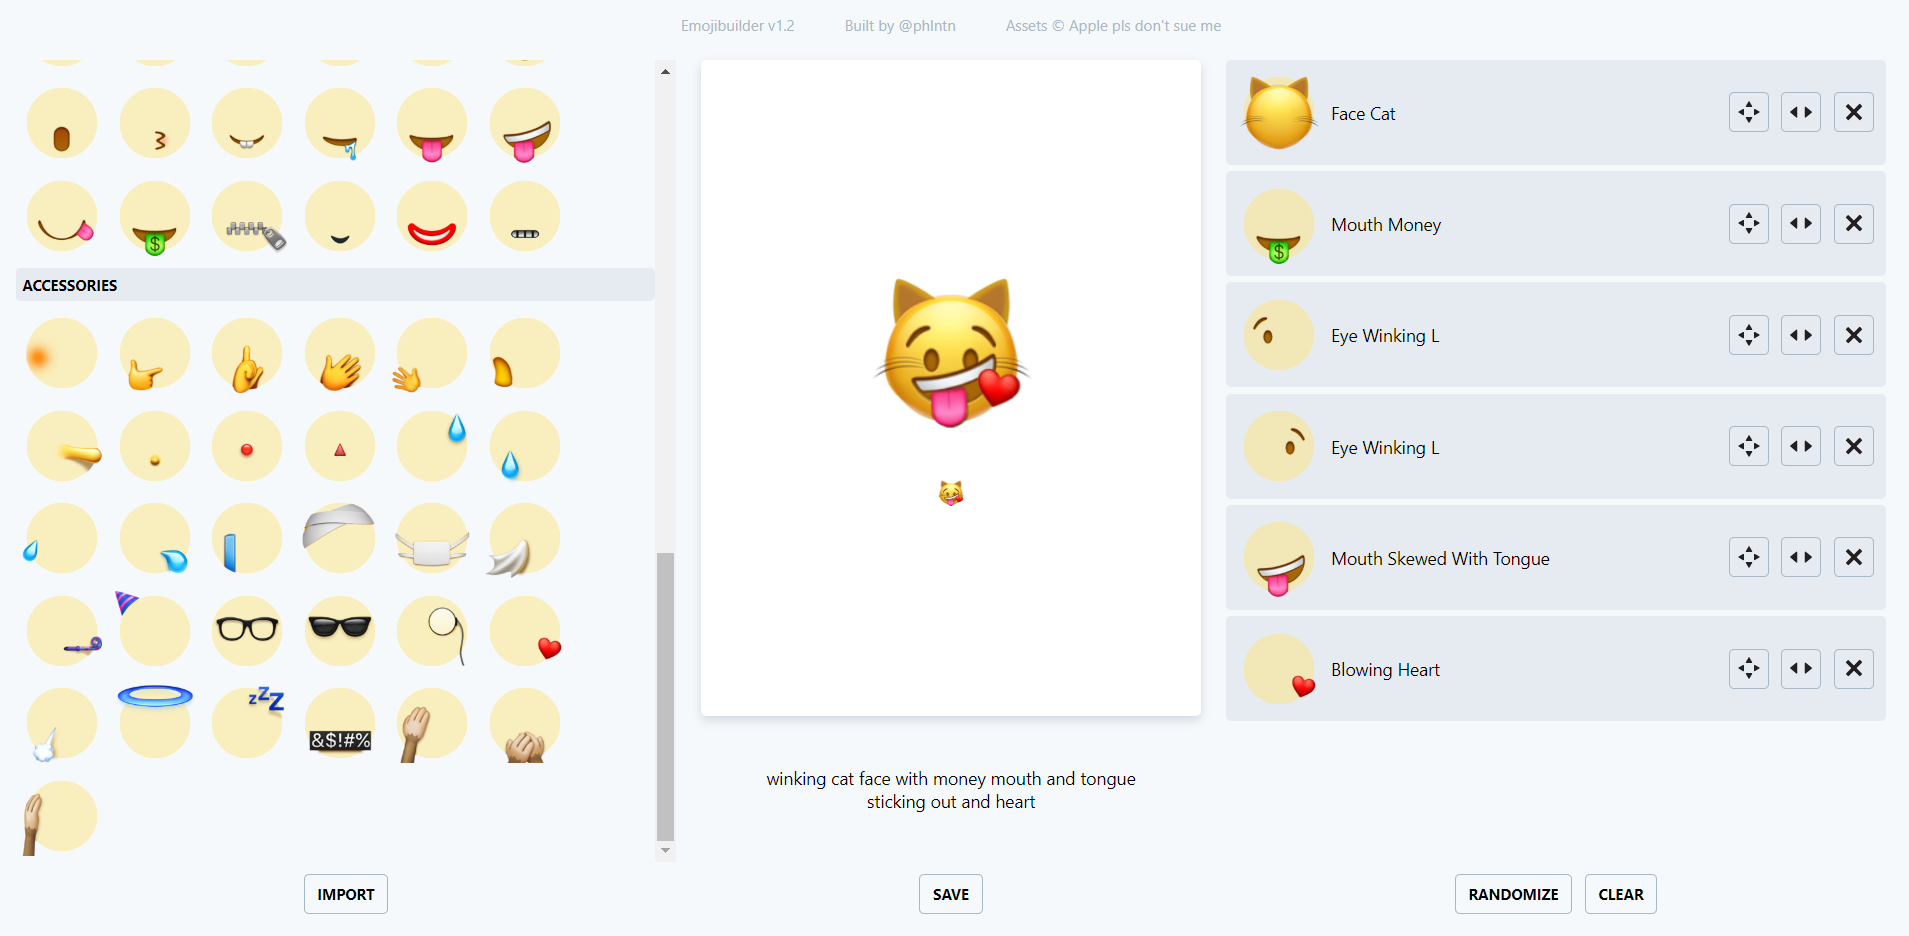 發現一個表情符號生成網站 Emoji010